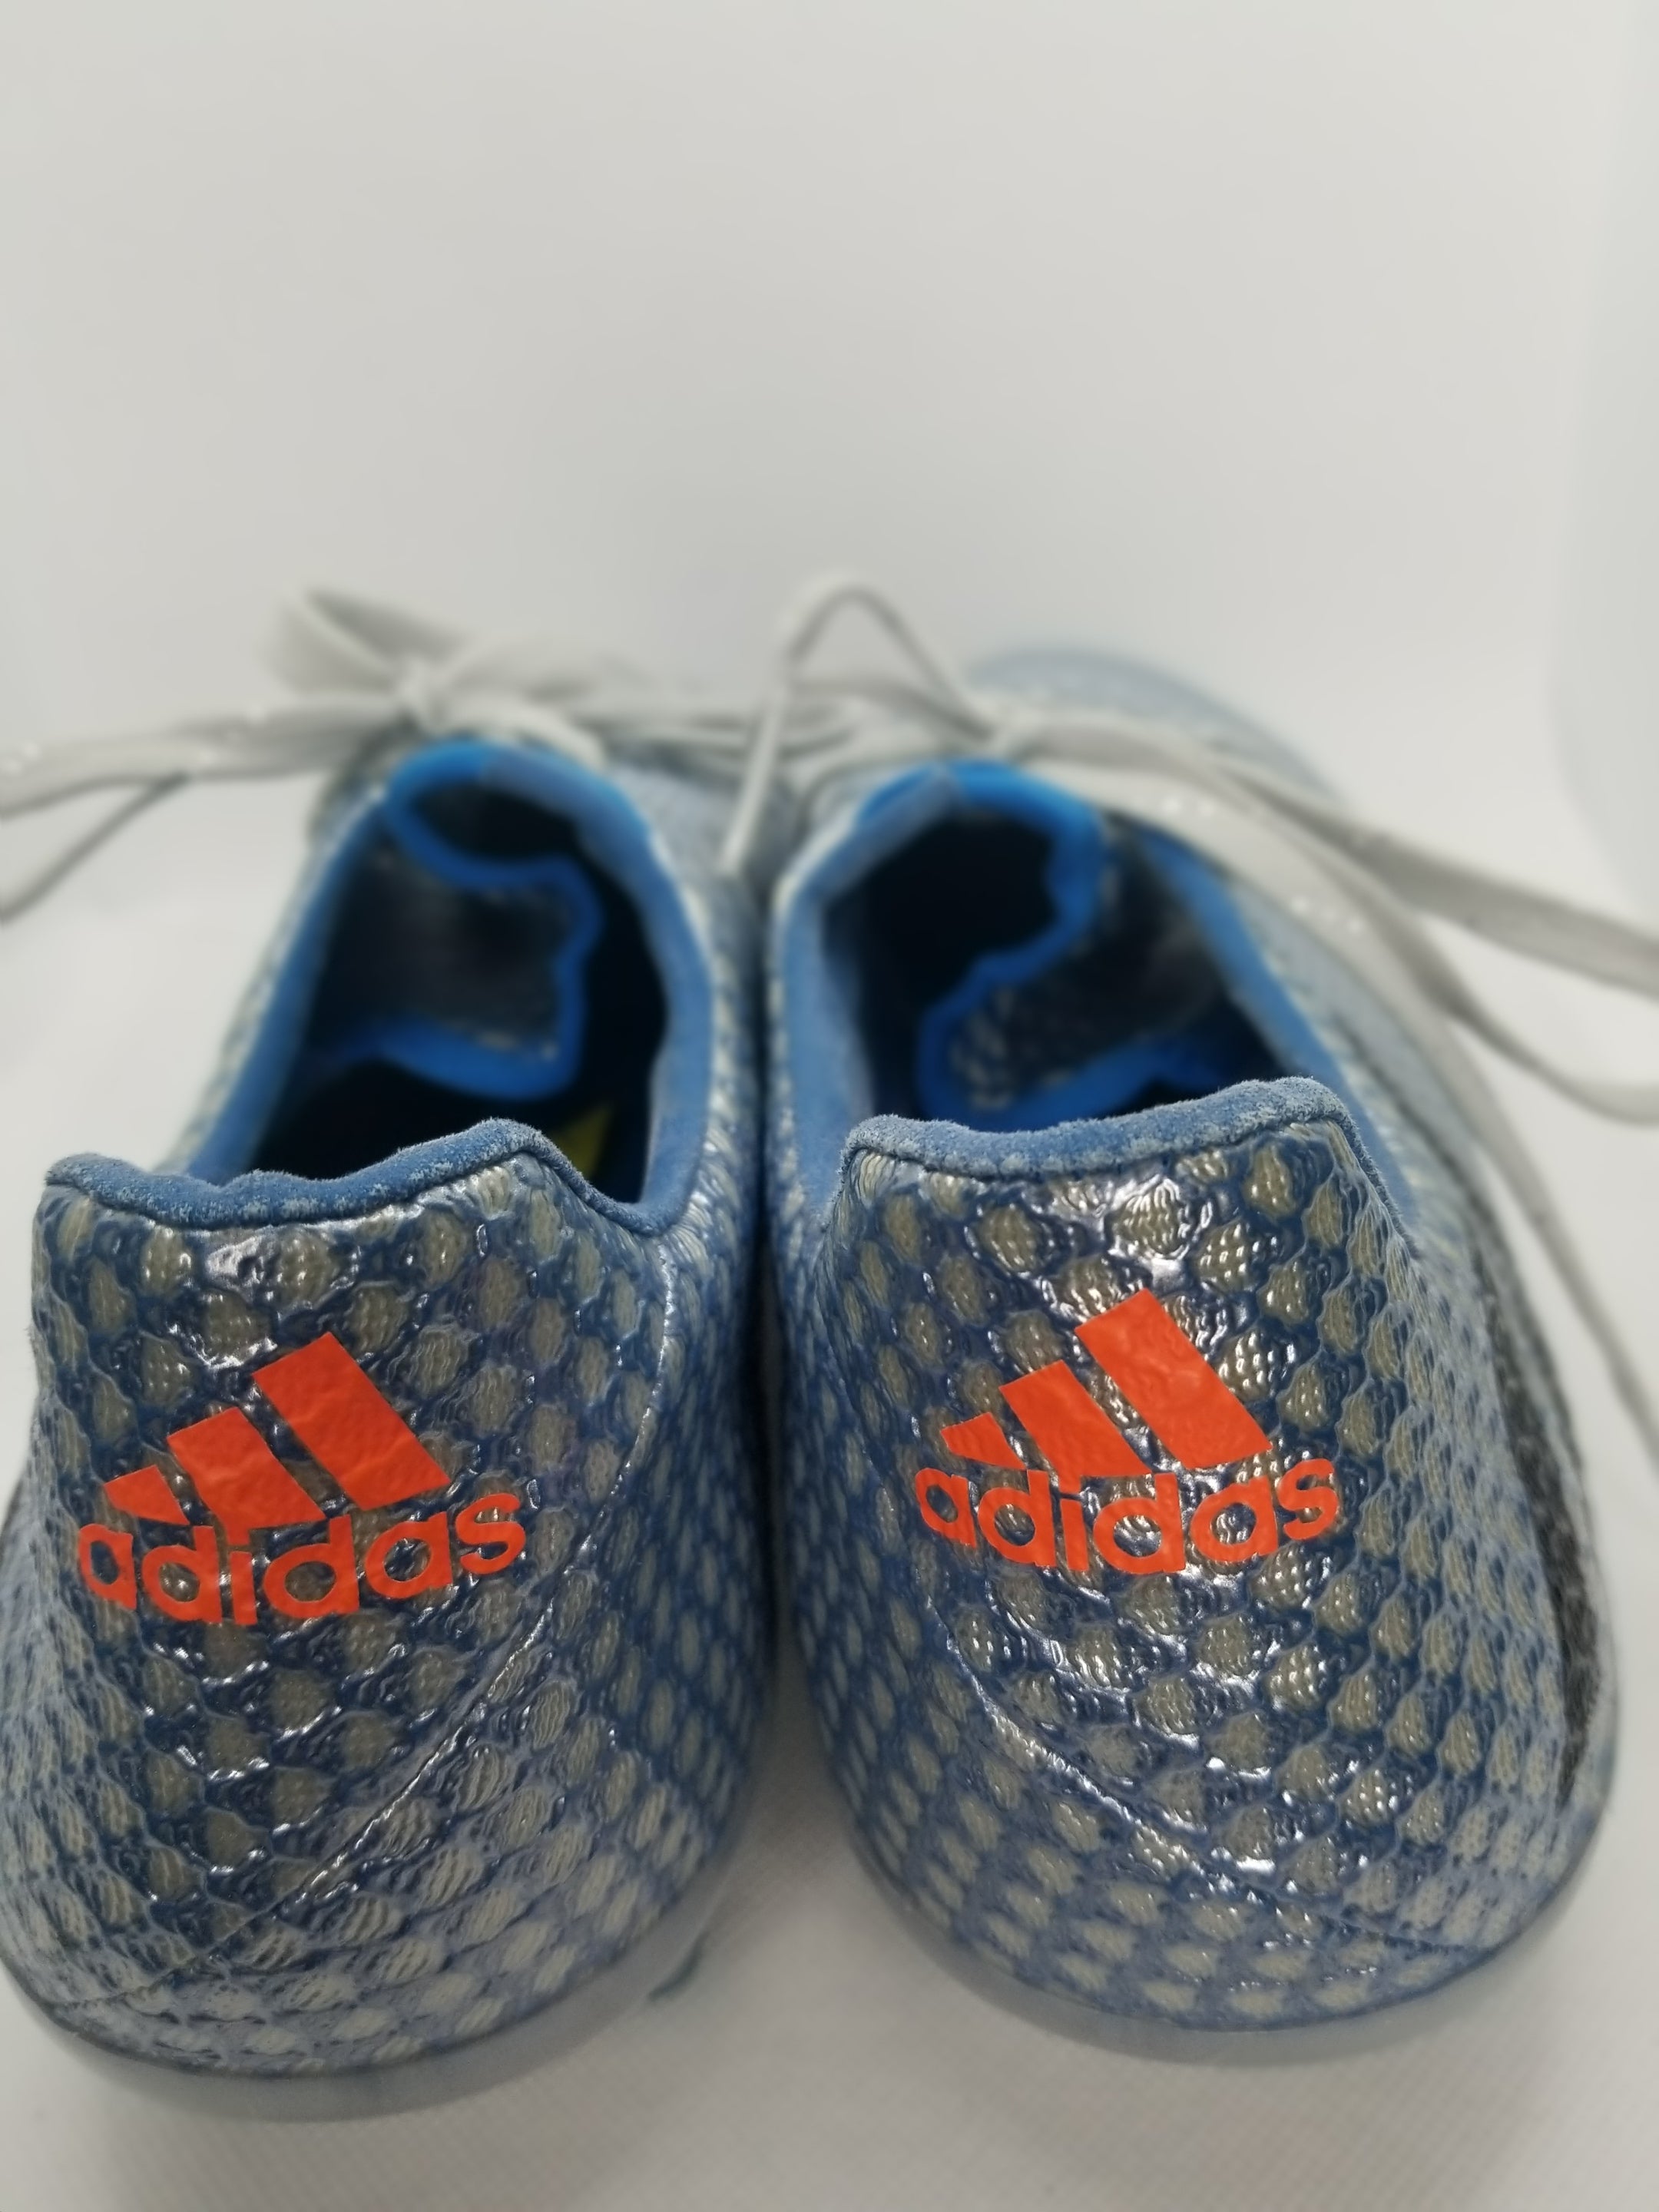 Adidas Messi 16.1 FG – Nyong Boots